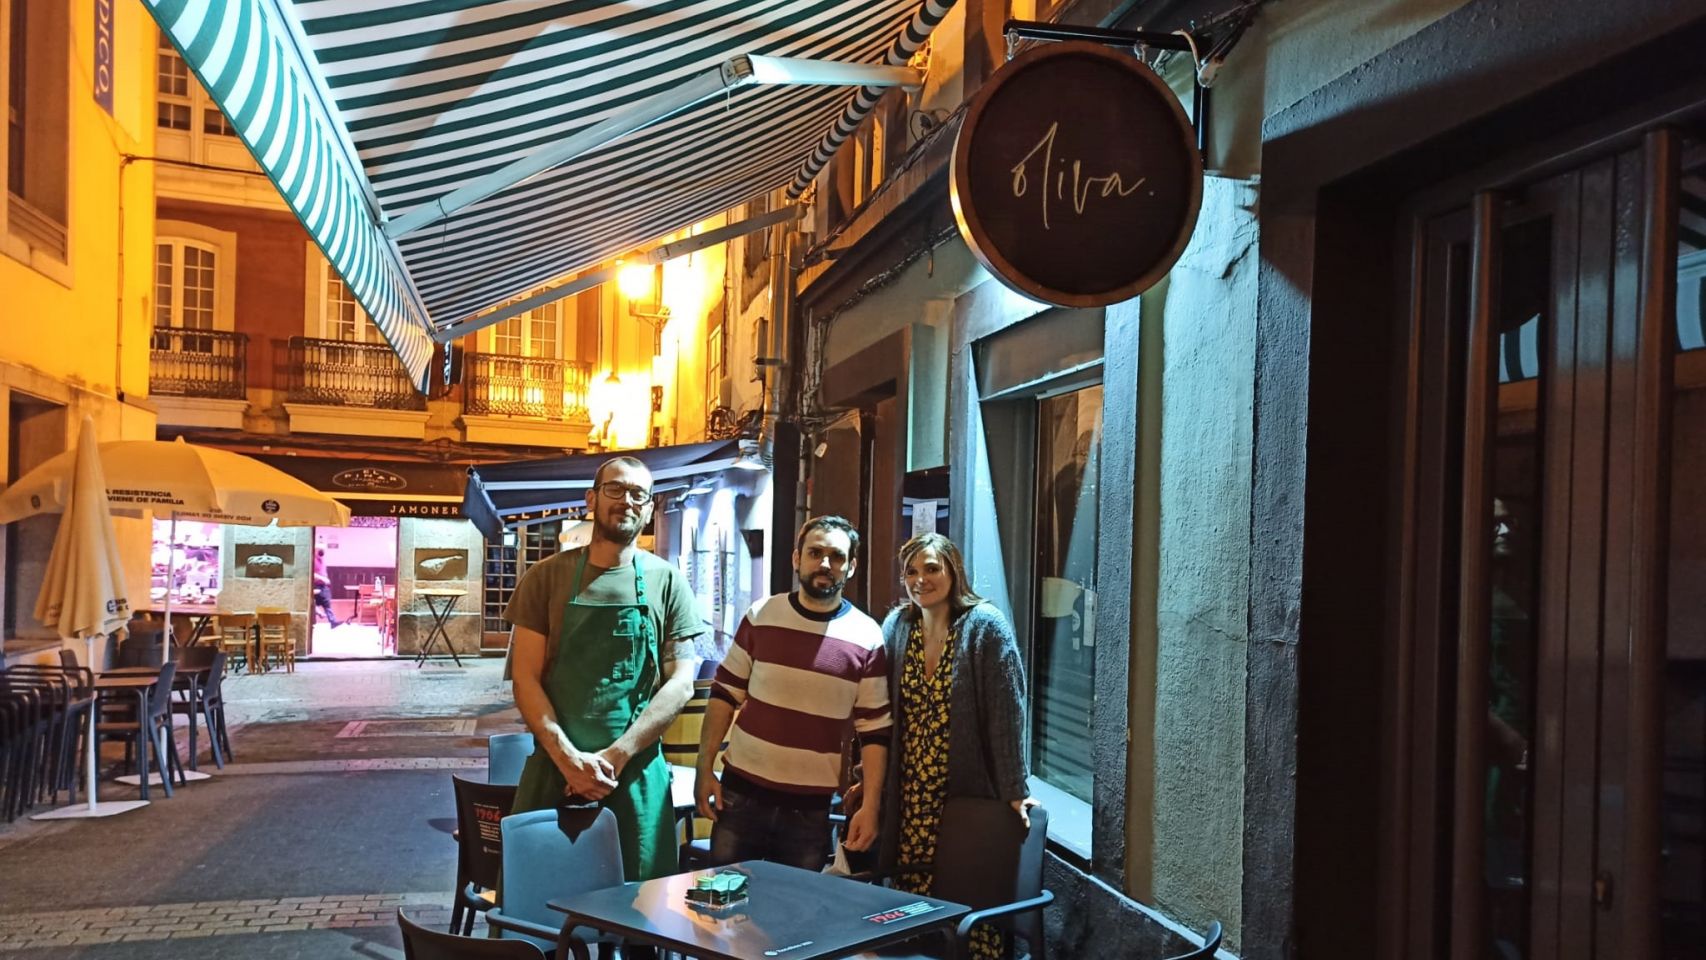 Guille, Fran e Inés en la entrada del Restaurante Oliva, situado en la calle Oliva de A Coruña.